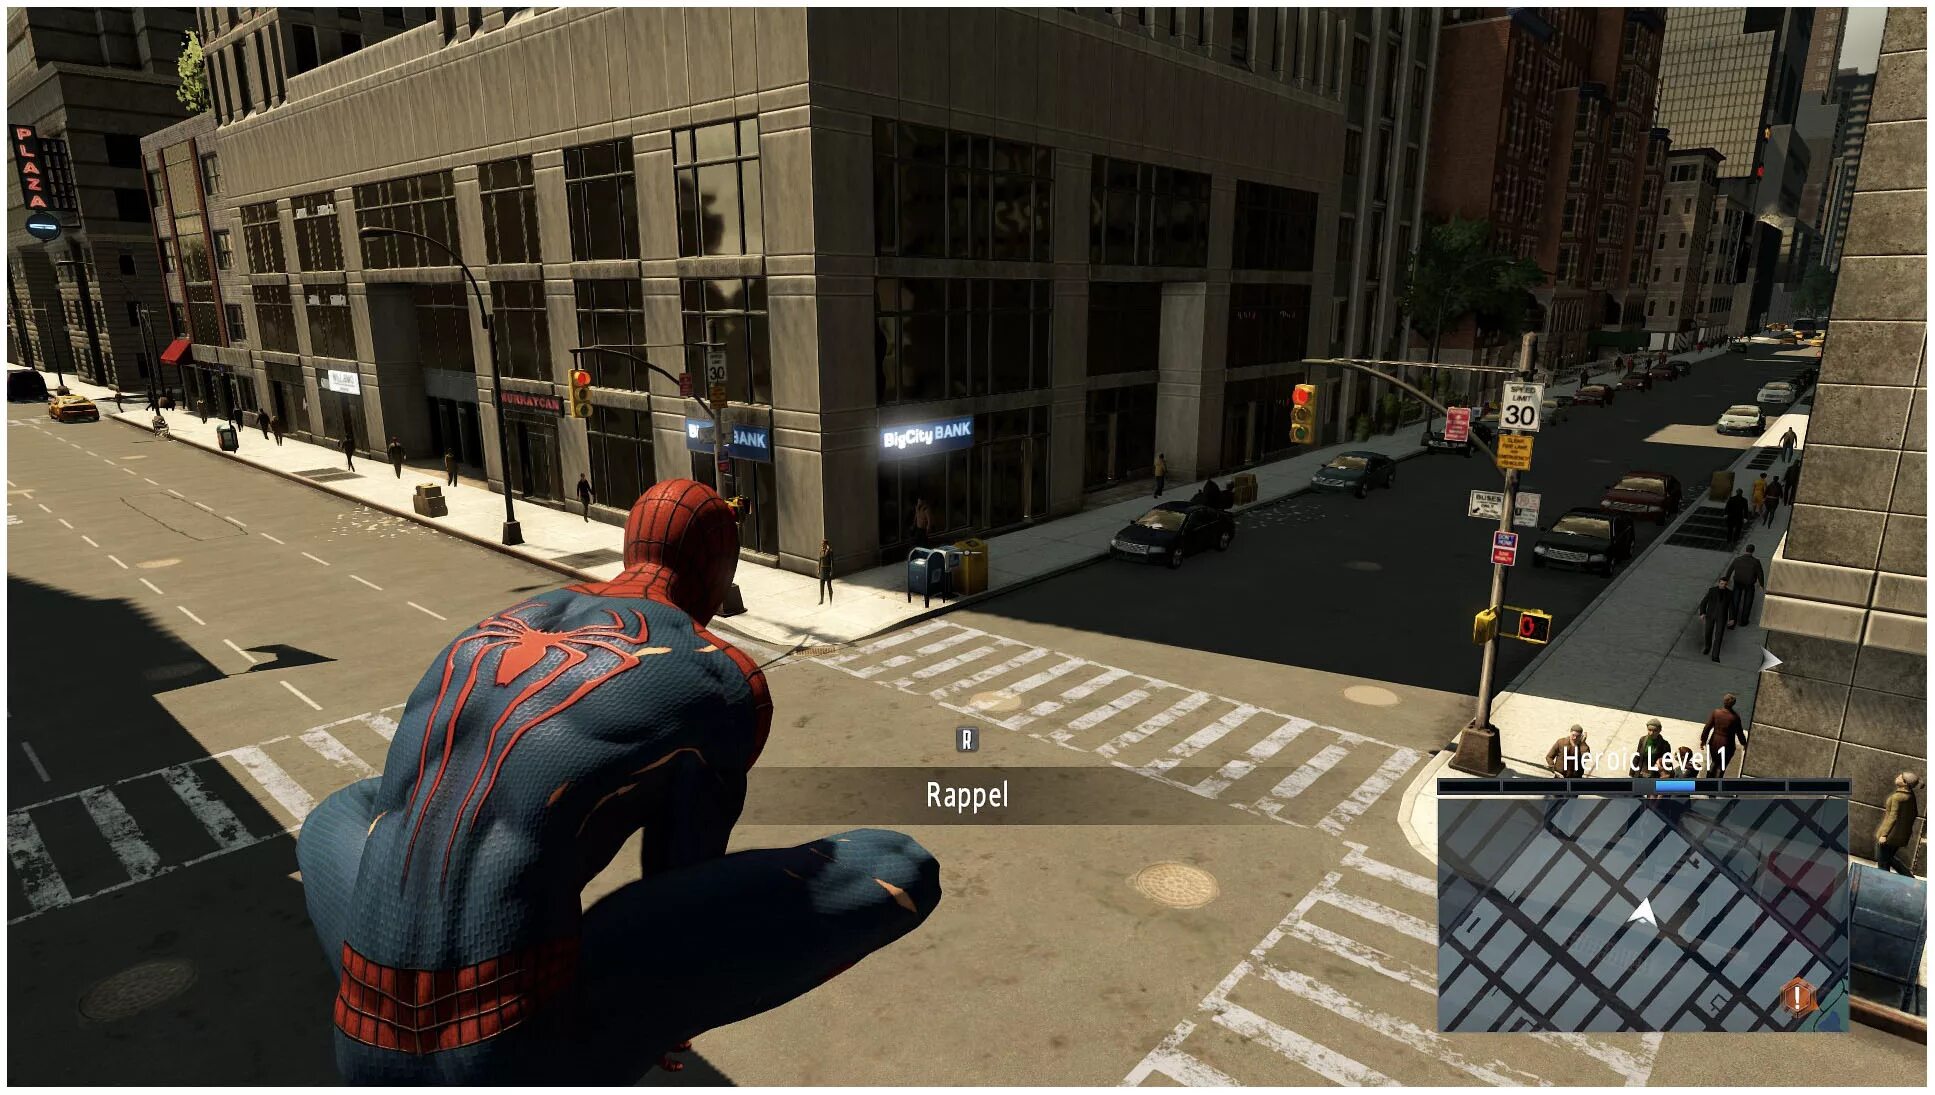 Эмэйзинг Спайдер Мэн 2. The amazing Spider-man 2 (игра, 2014). Человек паук амазинг 2 игра. Эмэйзинг Спайдер Мэн игра. Амазинг играть